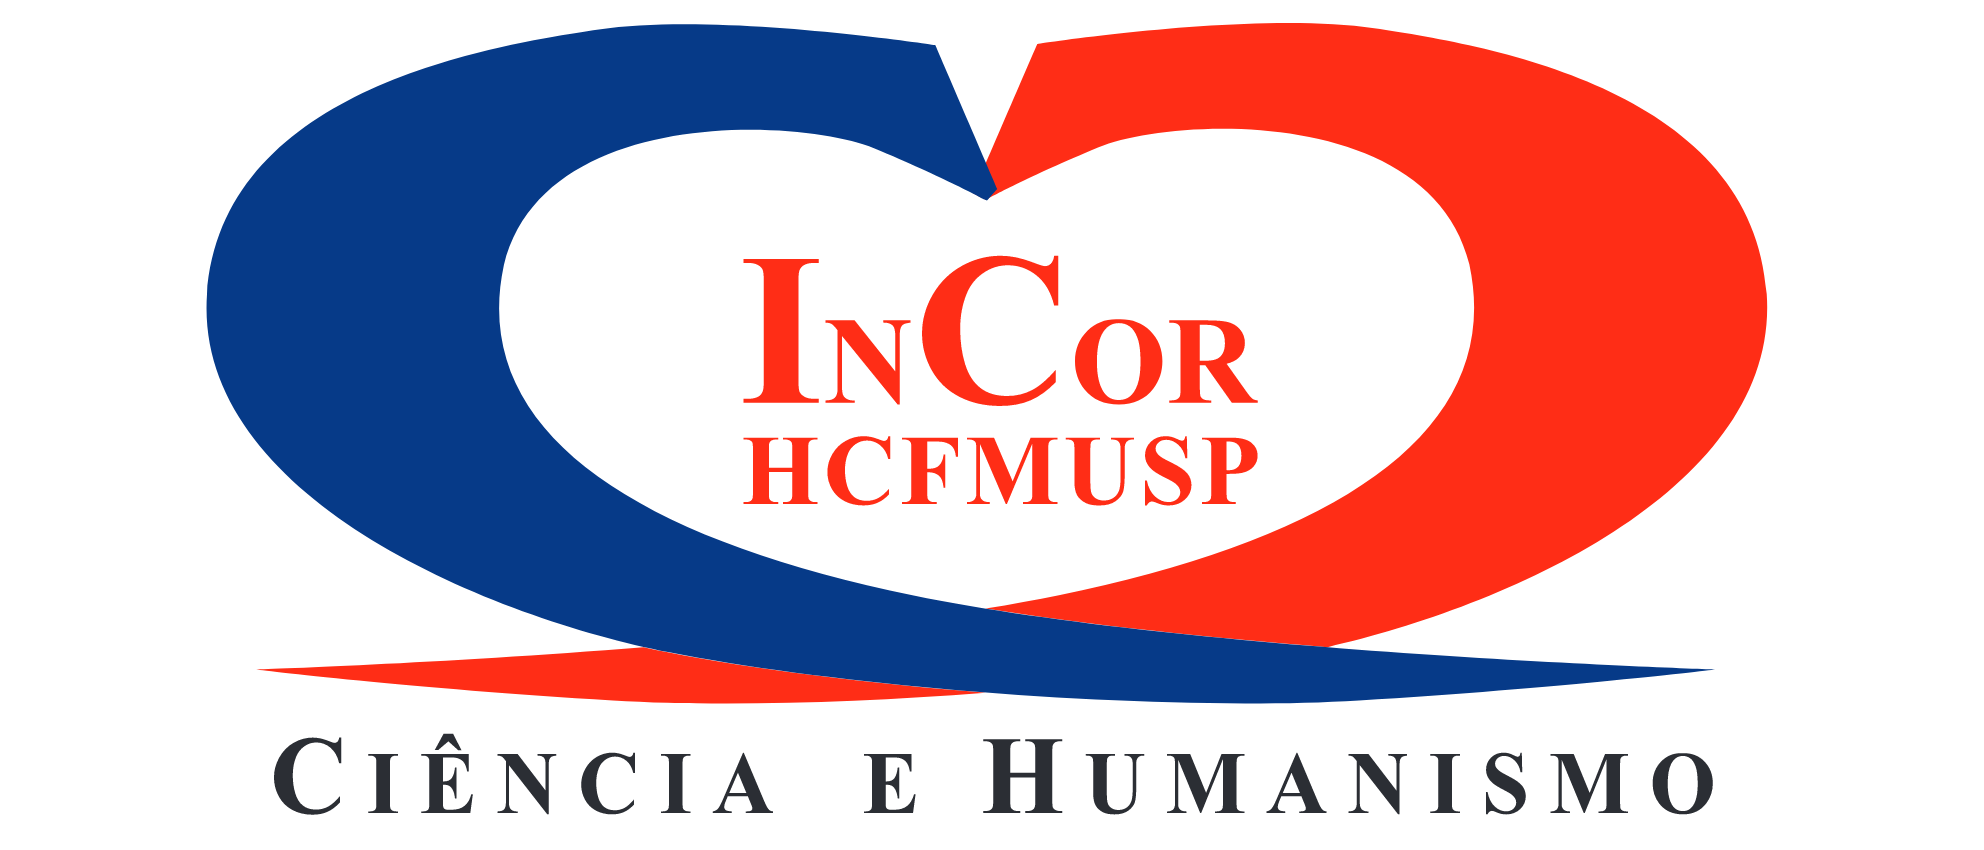 Logo_InCor_2010_Transparente_1.png